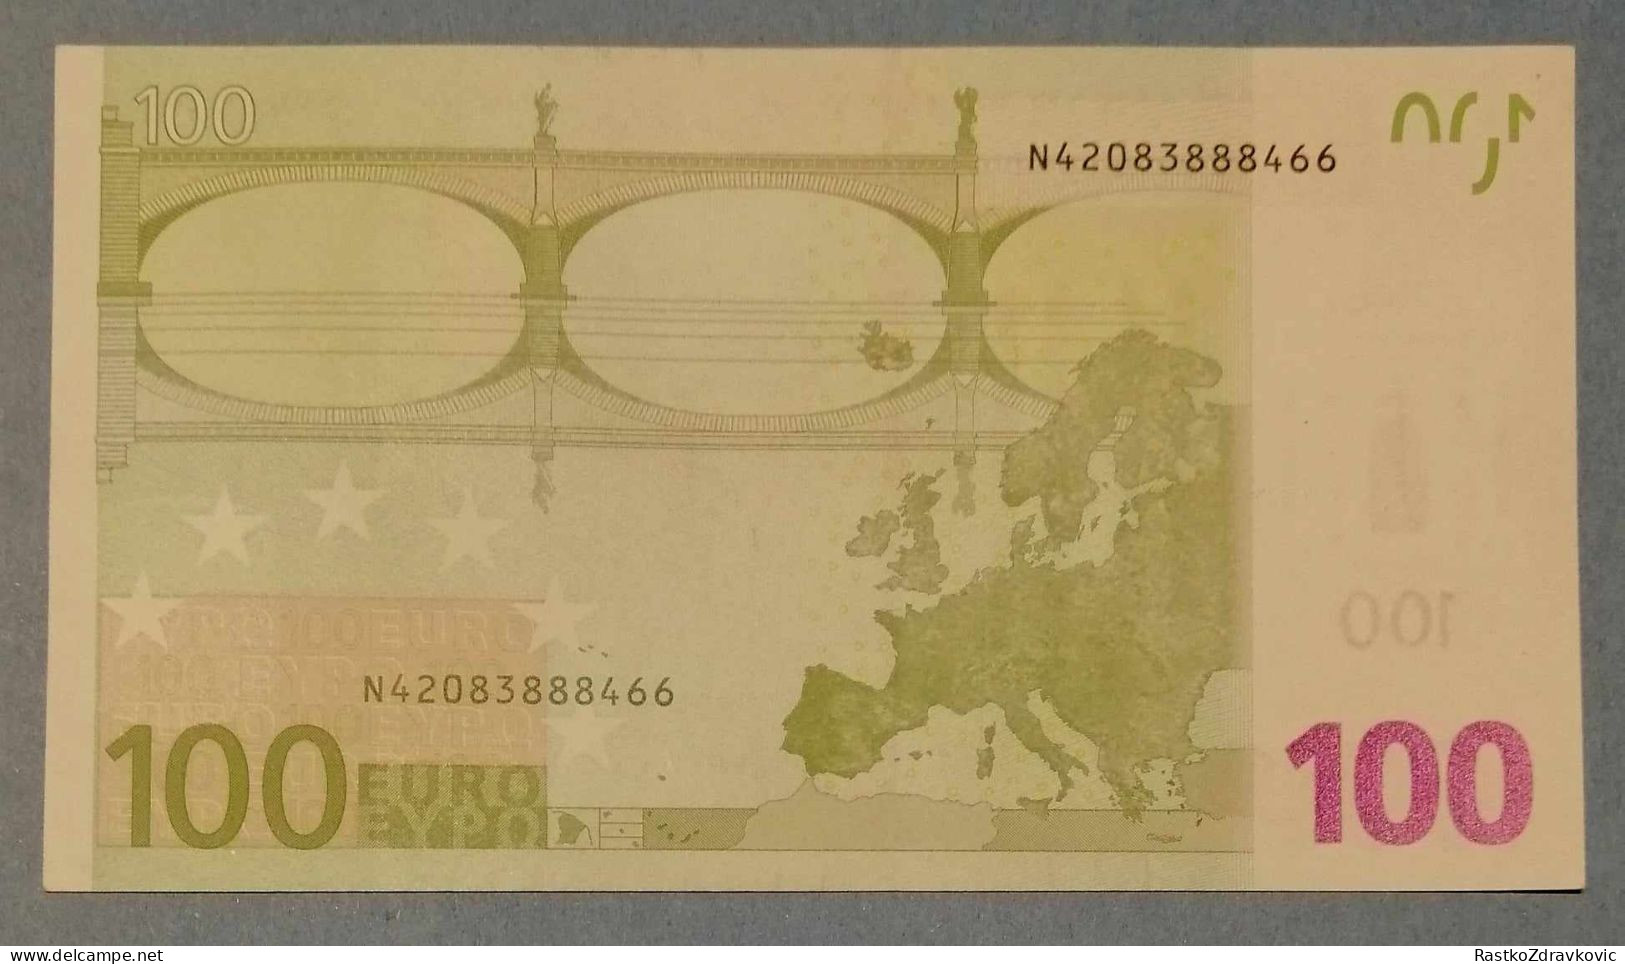 100 EUR BANKNOTE+2002 N PREFIX AUSTRIA JCT+GUVERNER JEAN CLAUDE TRICHET+UNC - 100 Euro